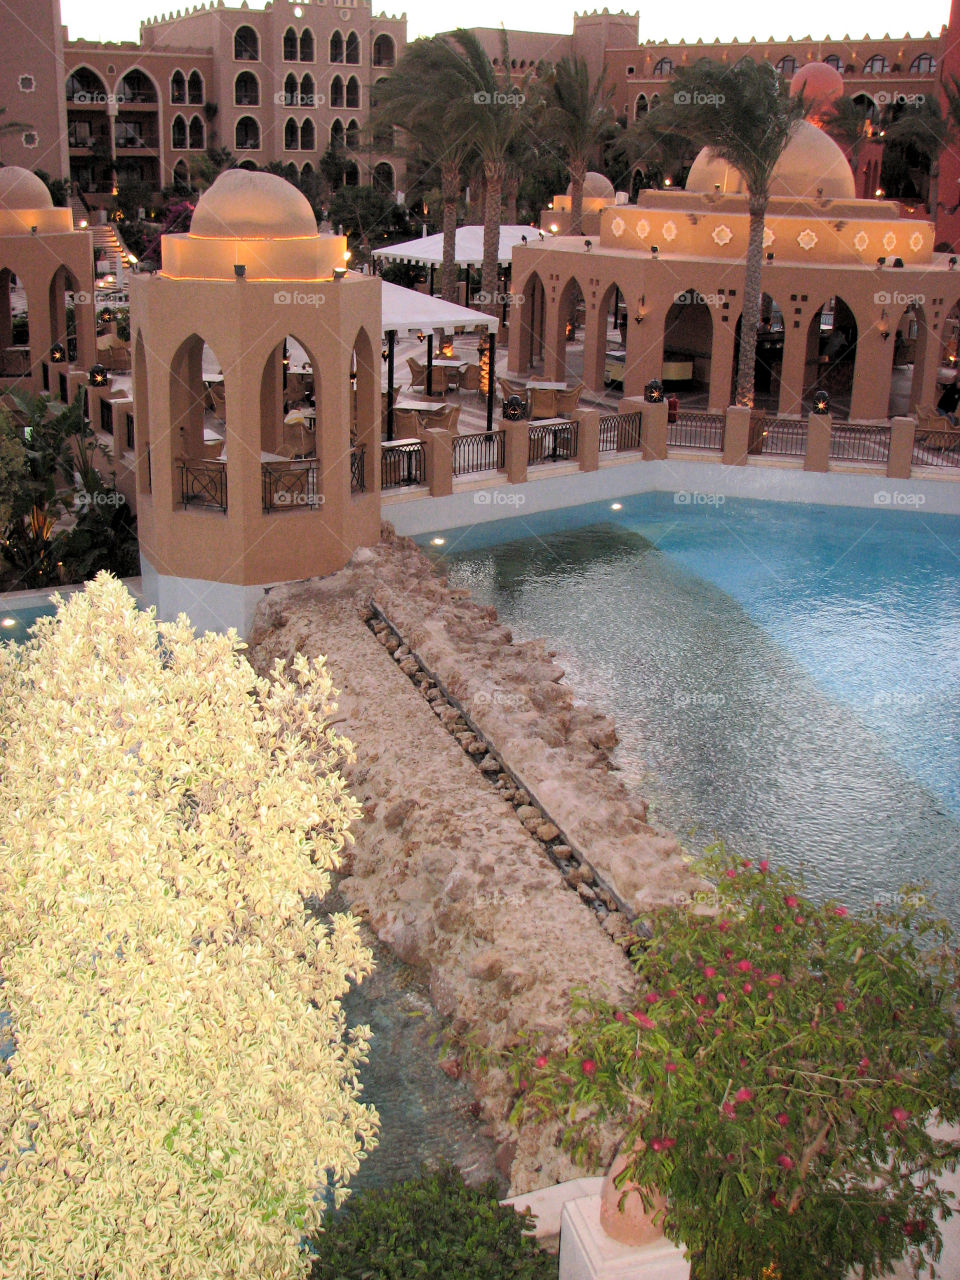 Hurghada resort architecture